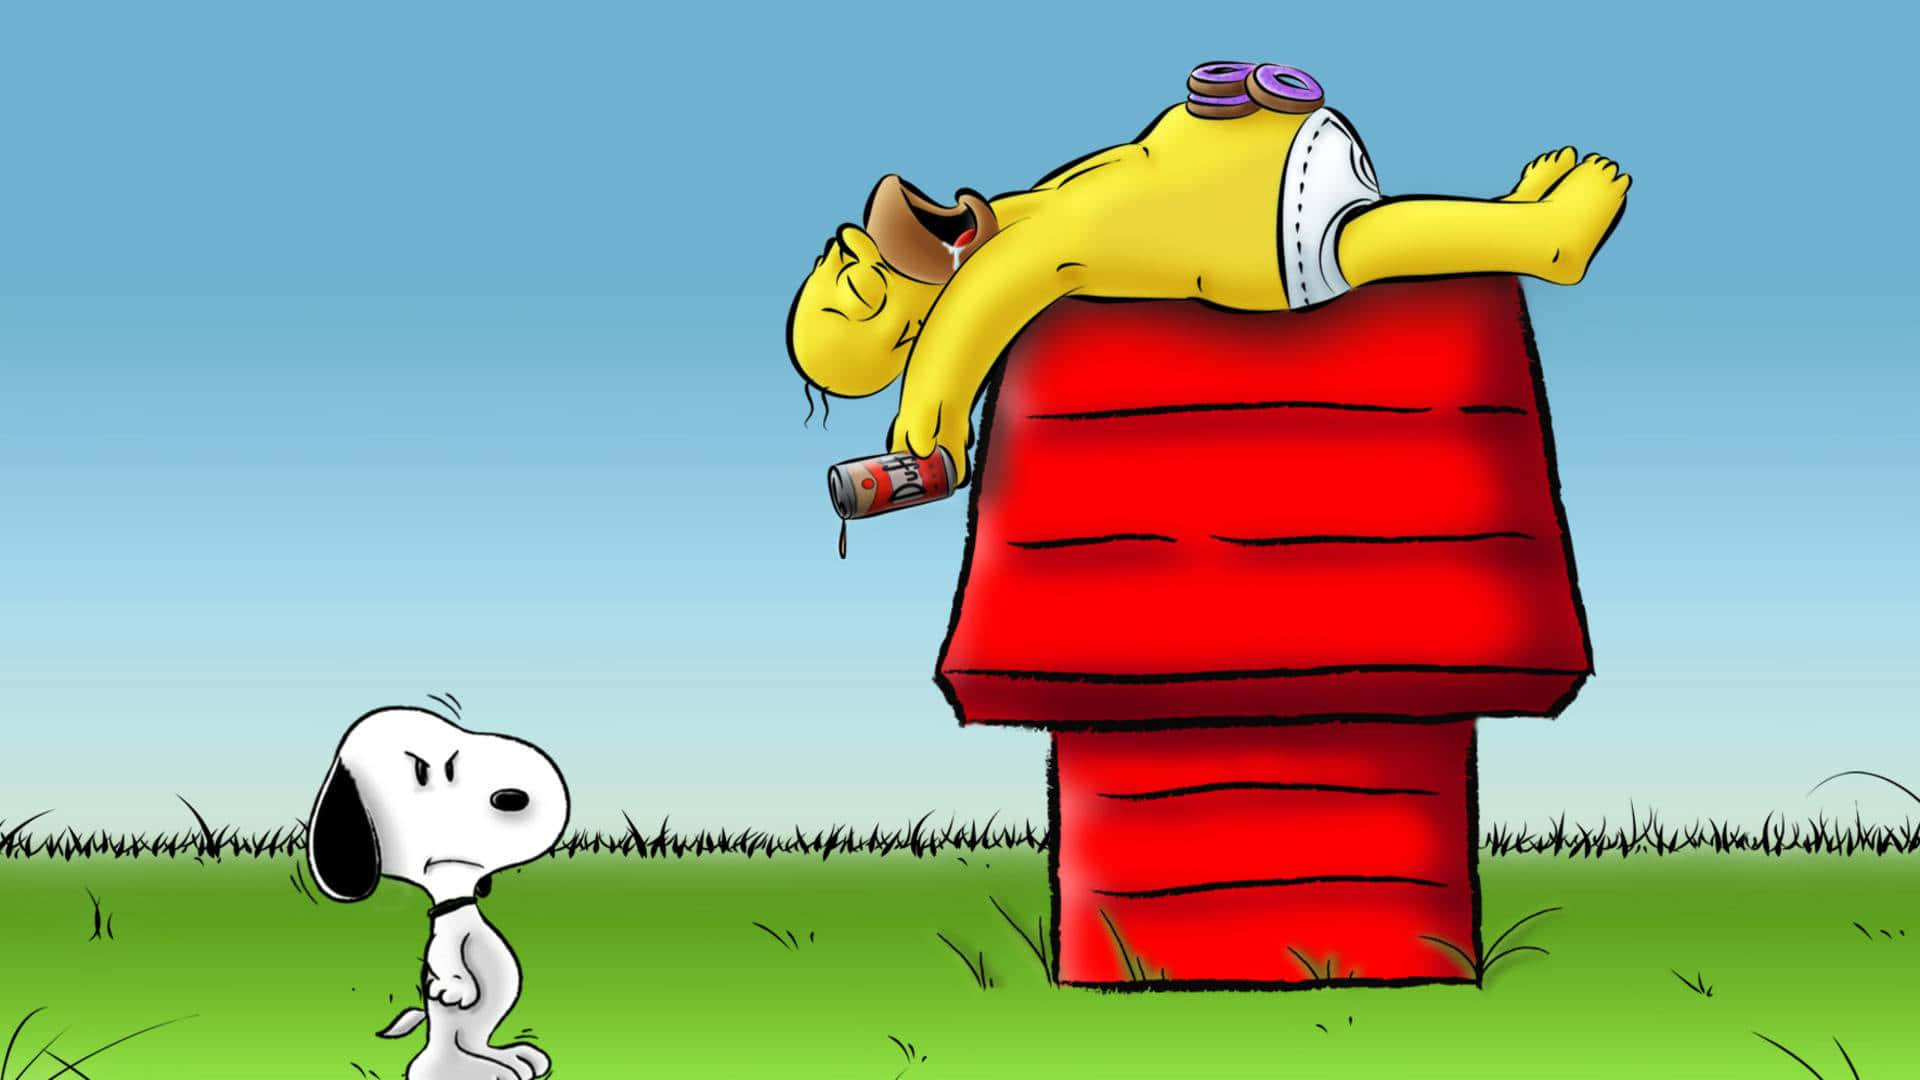 Homeroch Snoopy Blir Ett Roligt Korsningstecken På Dina Datorskärmar Eller Mobilbakgrunder.